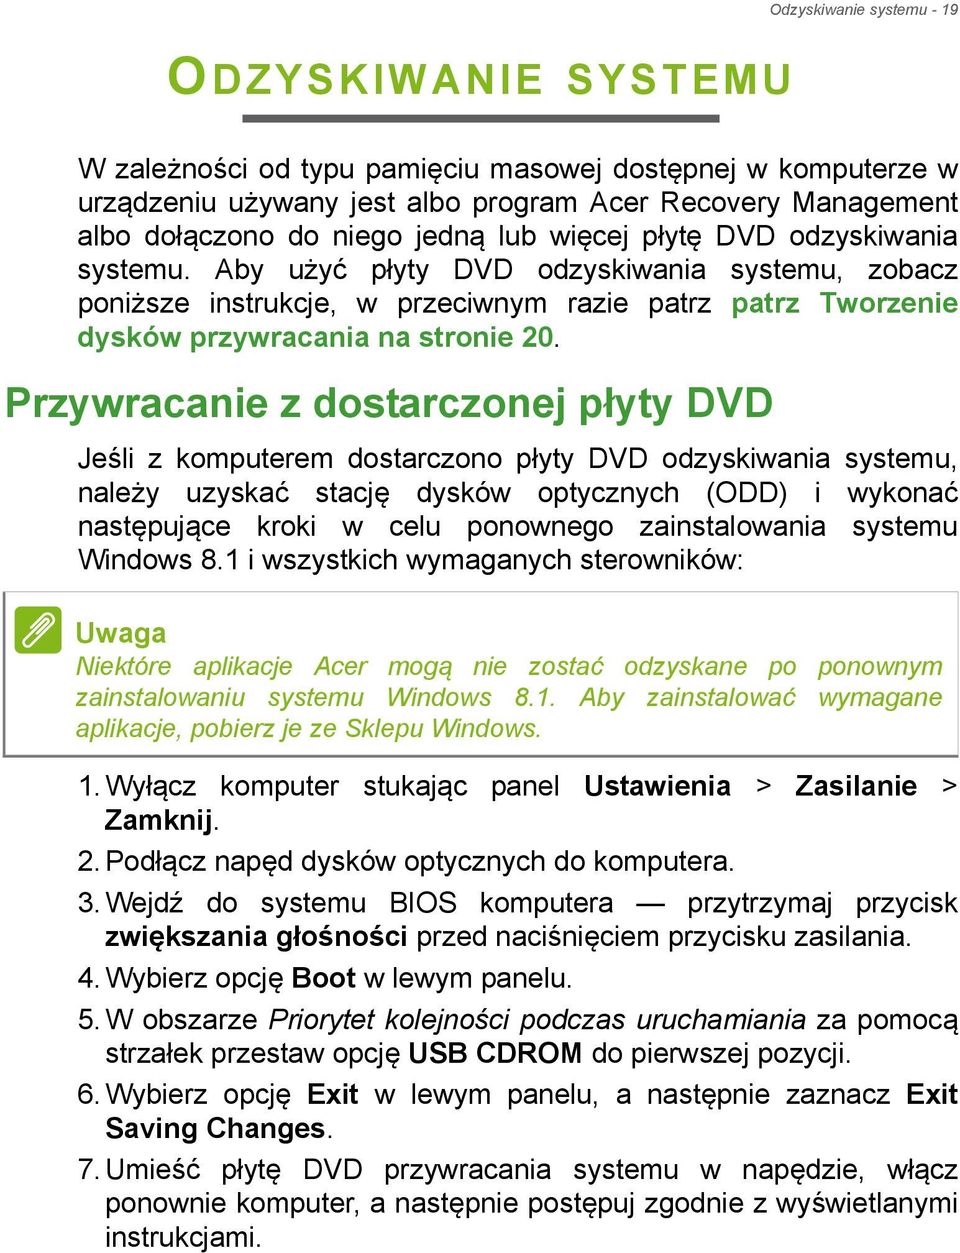 Przywracanie z dostarczonej płyty DVD Jeśli z komputerem dostarczono płyty DVD odzyskiwania systemu, należy uzyskać stację dysków optycznych (ODD) i wykonać następujące kroki w celu ponownego